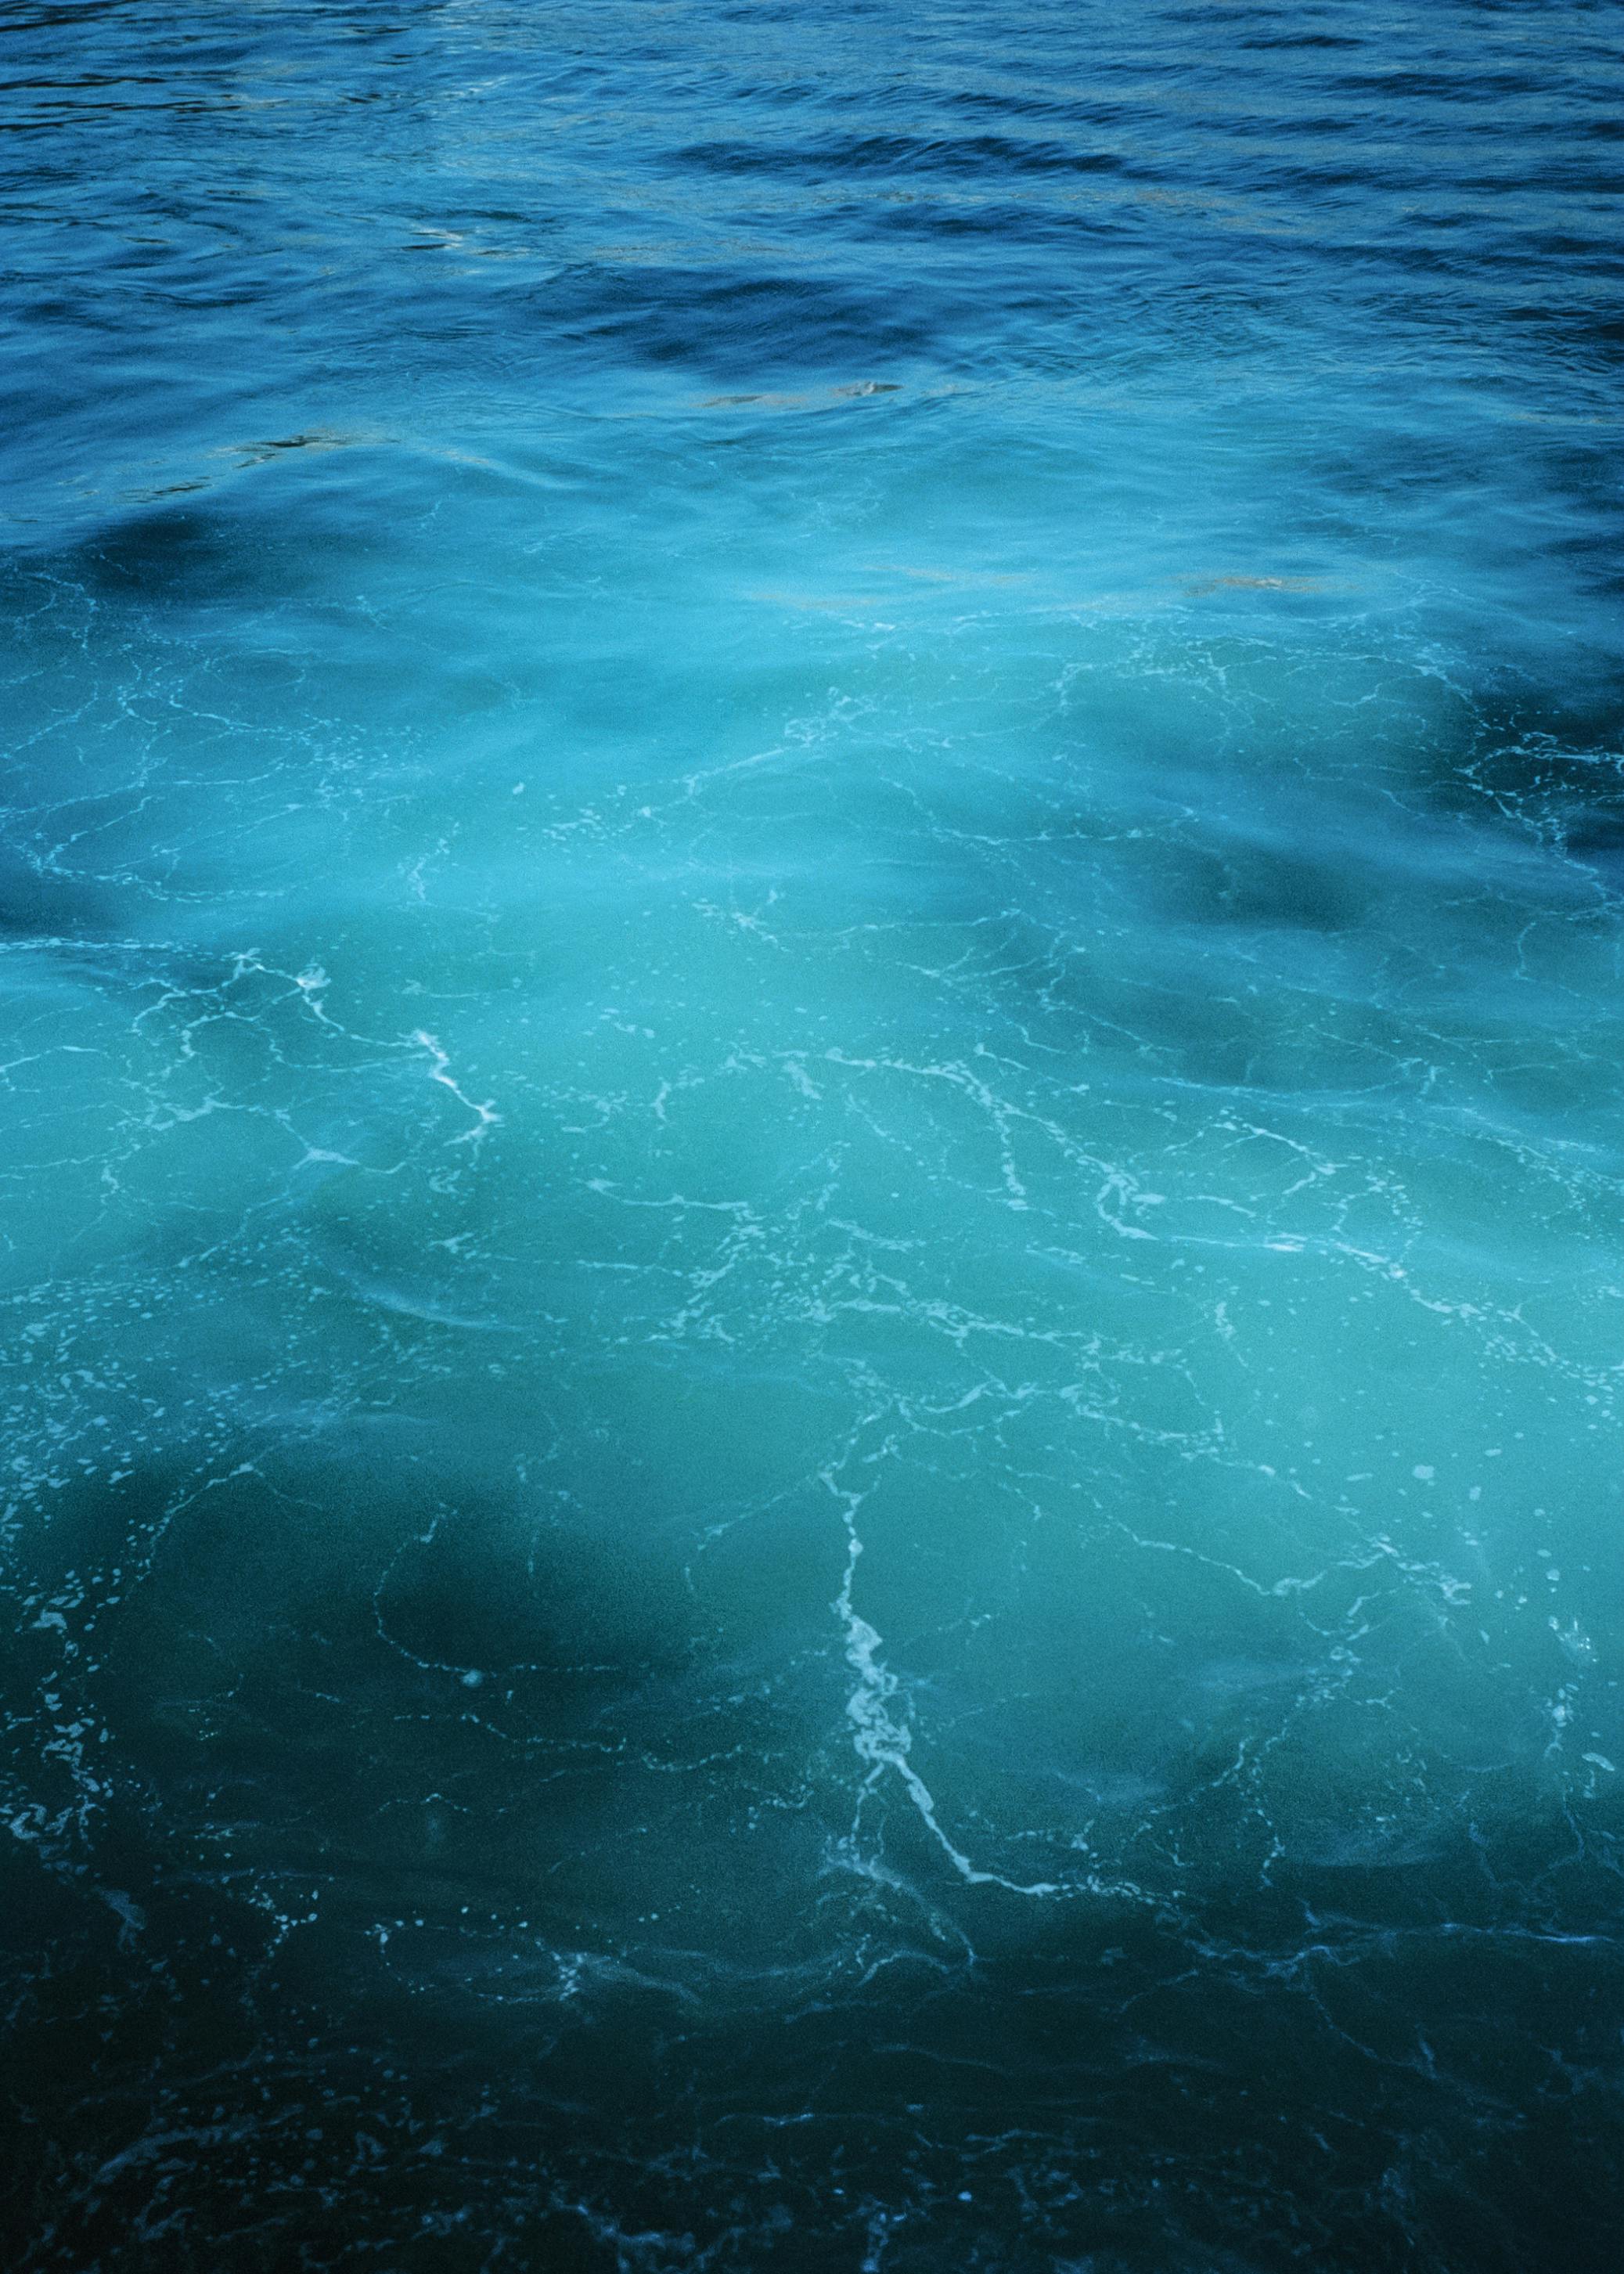 Cùng khám phá vẻ đẹp của đại dương xanh thủy triều trong hình nền này. Khi chiêm ngưỡng, bạn sẽ cảm thấy mình như được chìm vào dòng nước trong suốt và cảm nhận được sự mê hoặc của những làn sóng đàn hồi.